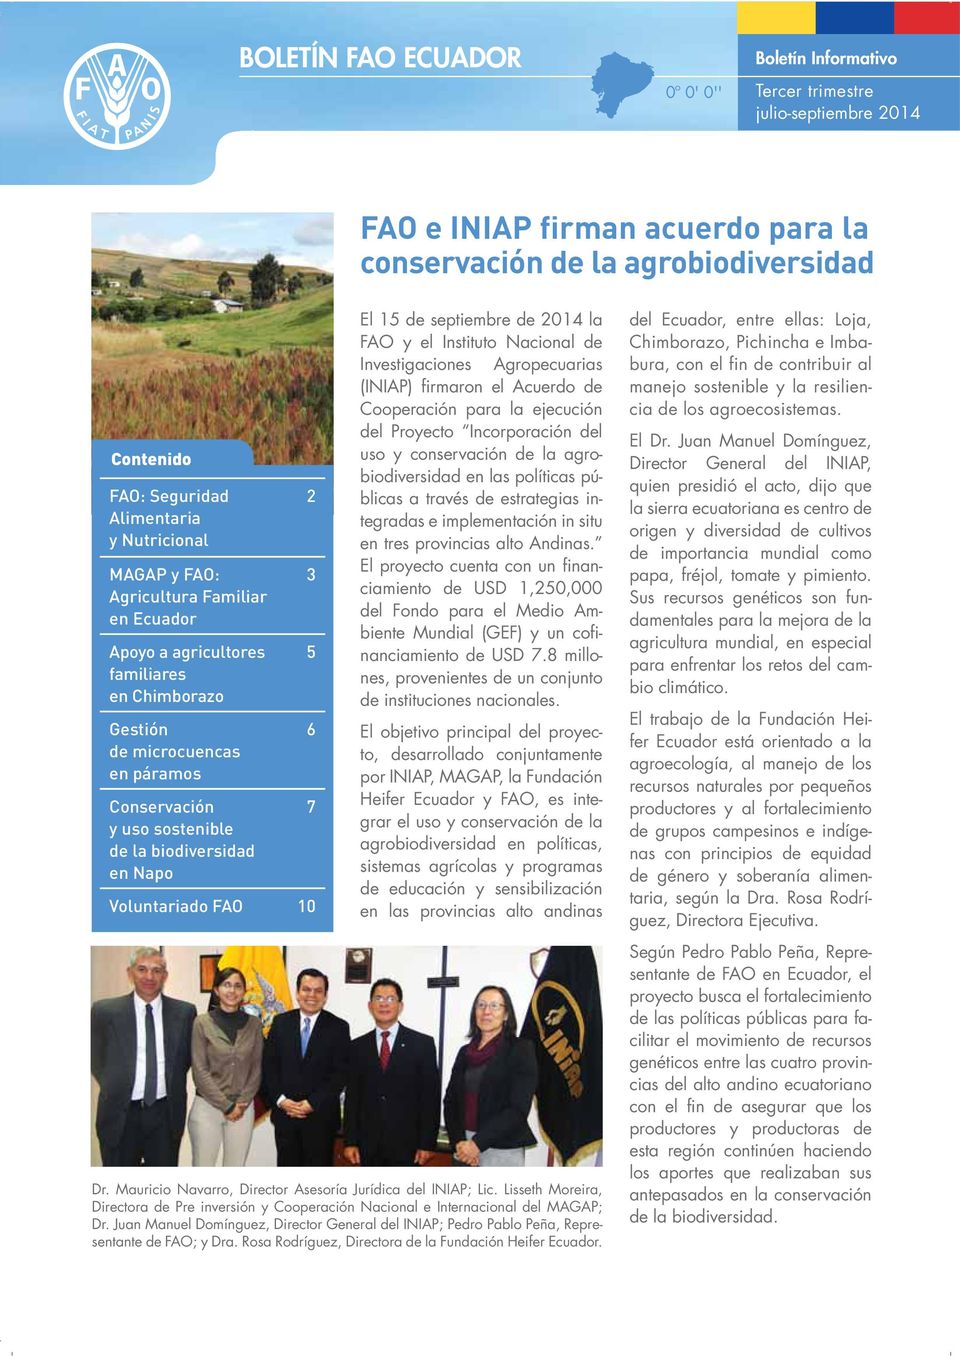 Voluntariado FAO 10 2 3 5 6 7 El 15 de septiembre de 2014 la FAO y el Instituto Nacional de Investigaciones Agropecuarias (INIAP) firmaron el Acuerdo de Cooperación para la ejecución del Proyecto